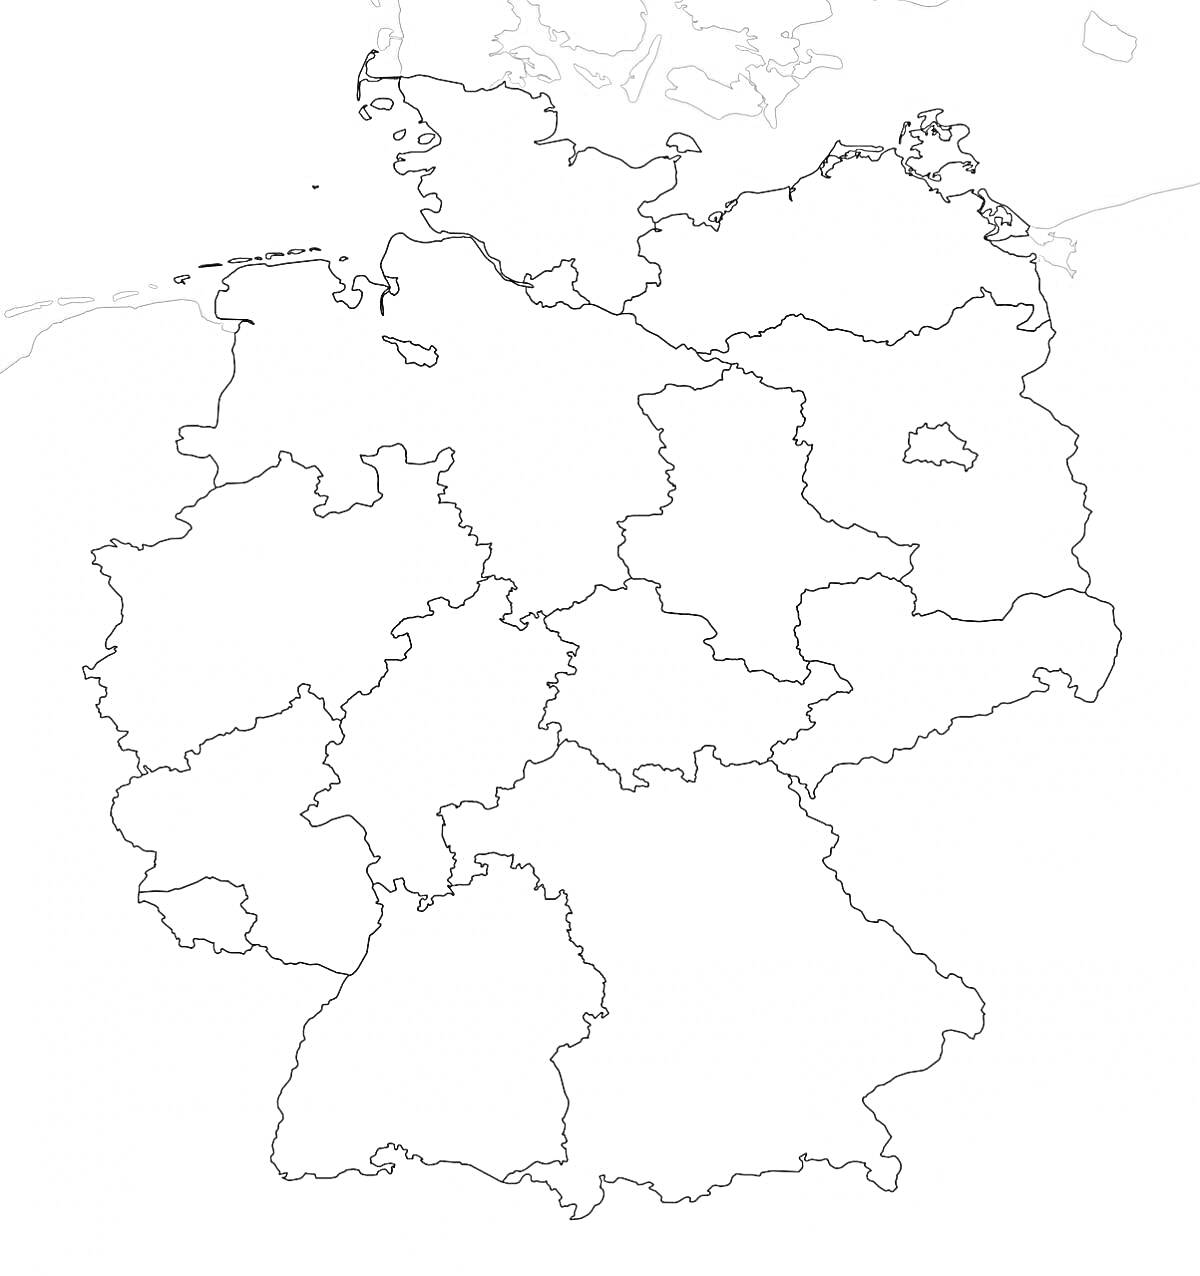 Раскраска Карта Германии с границами федеральных земель